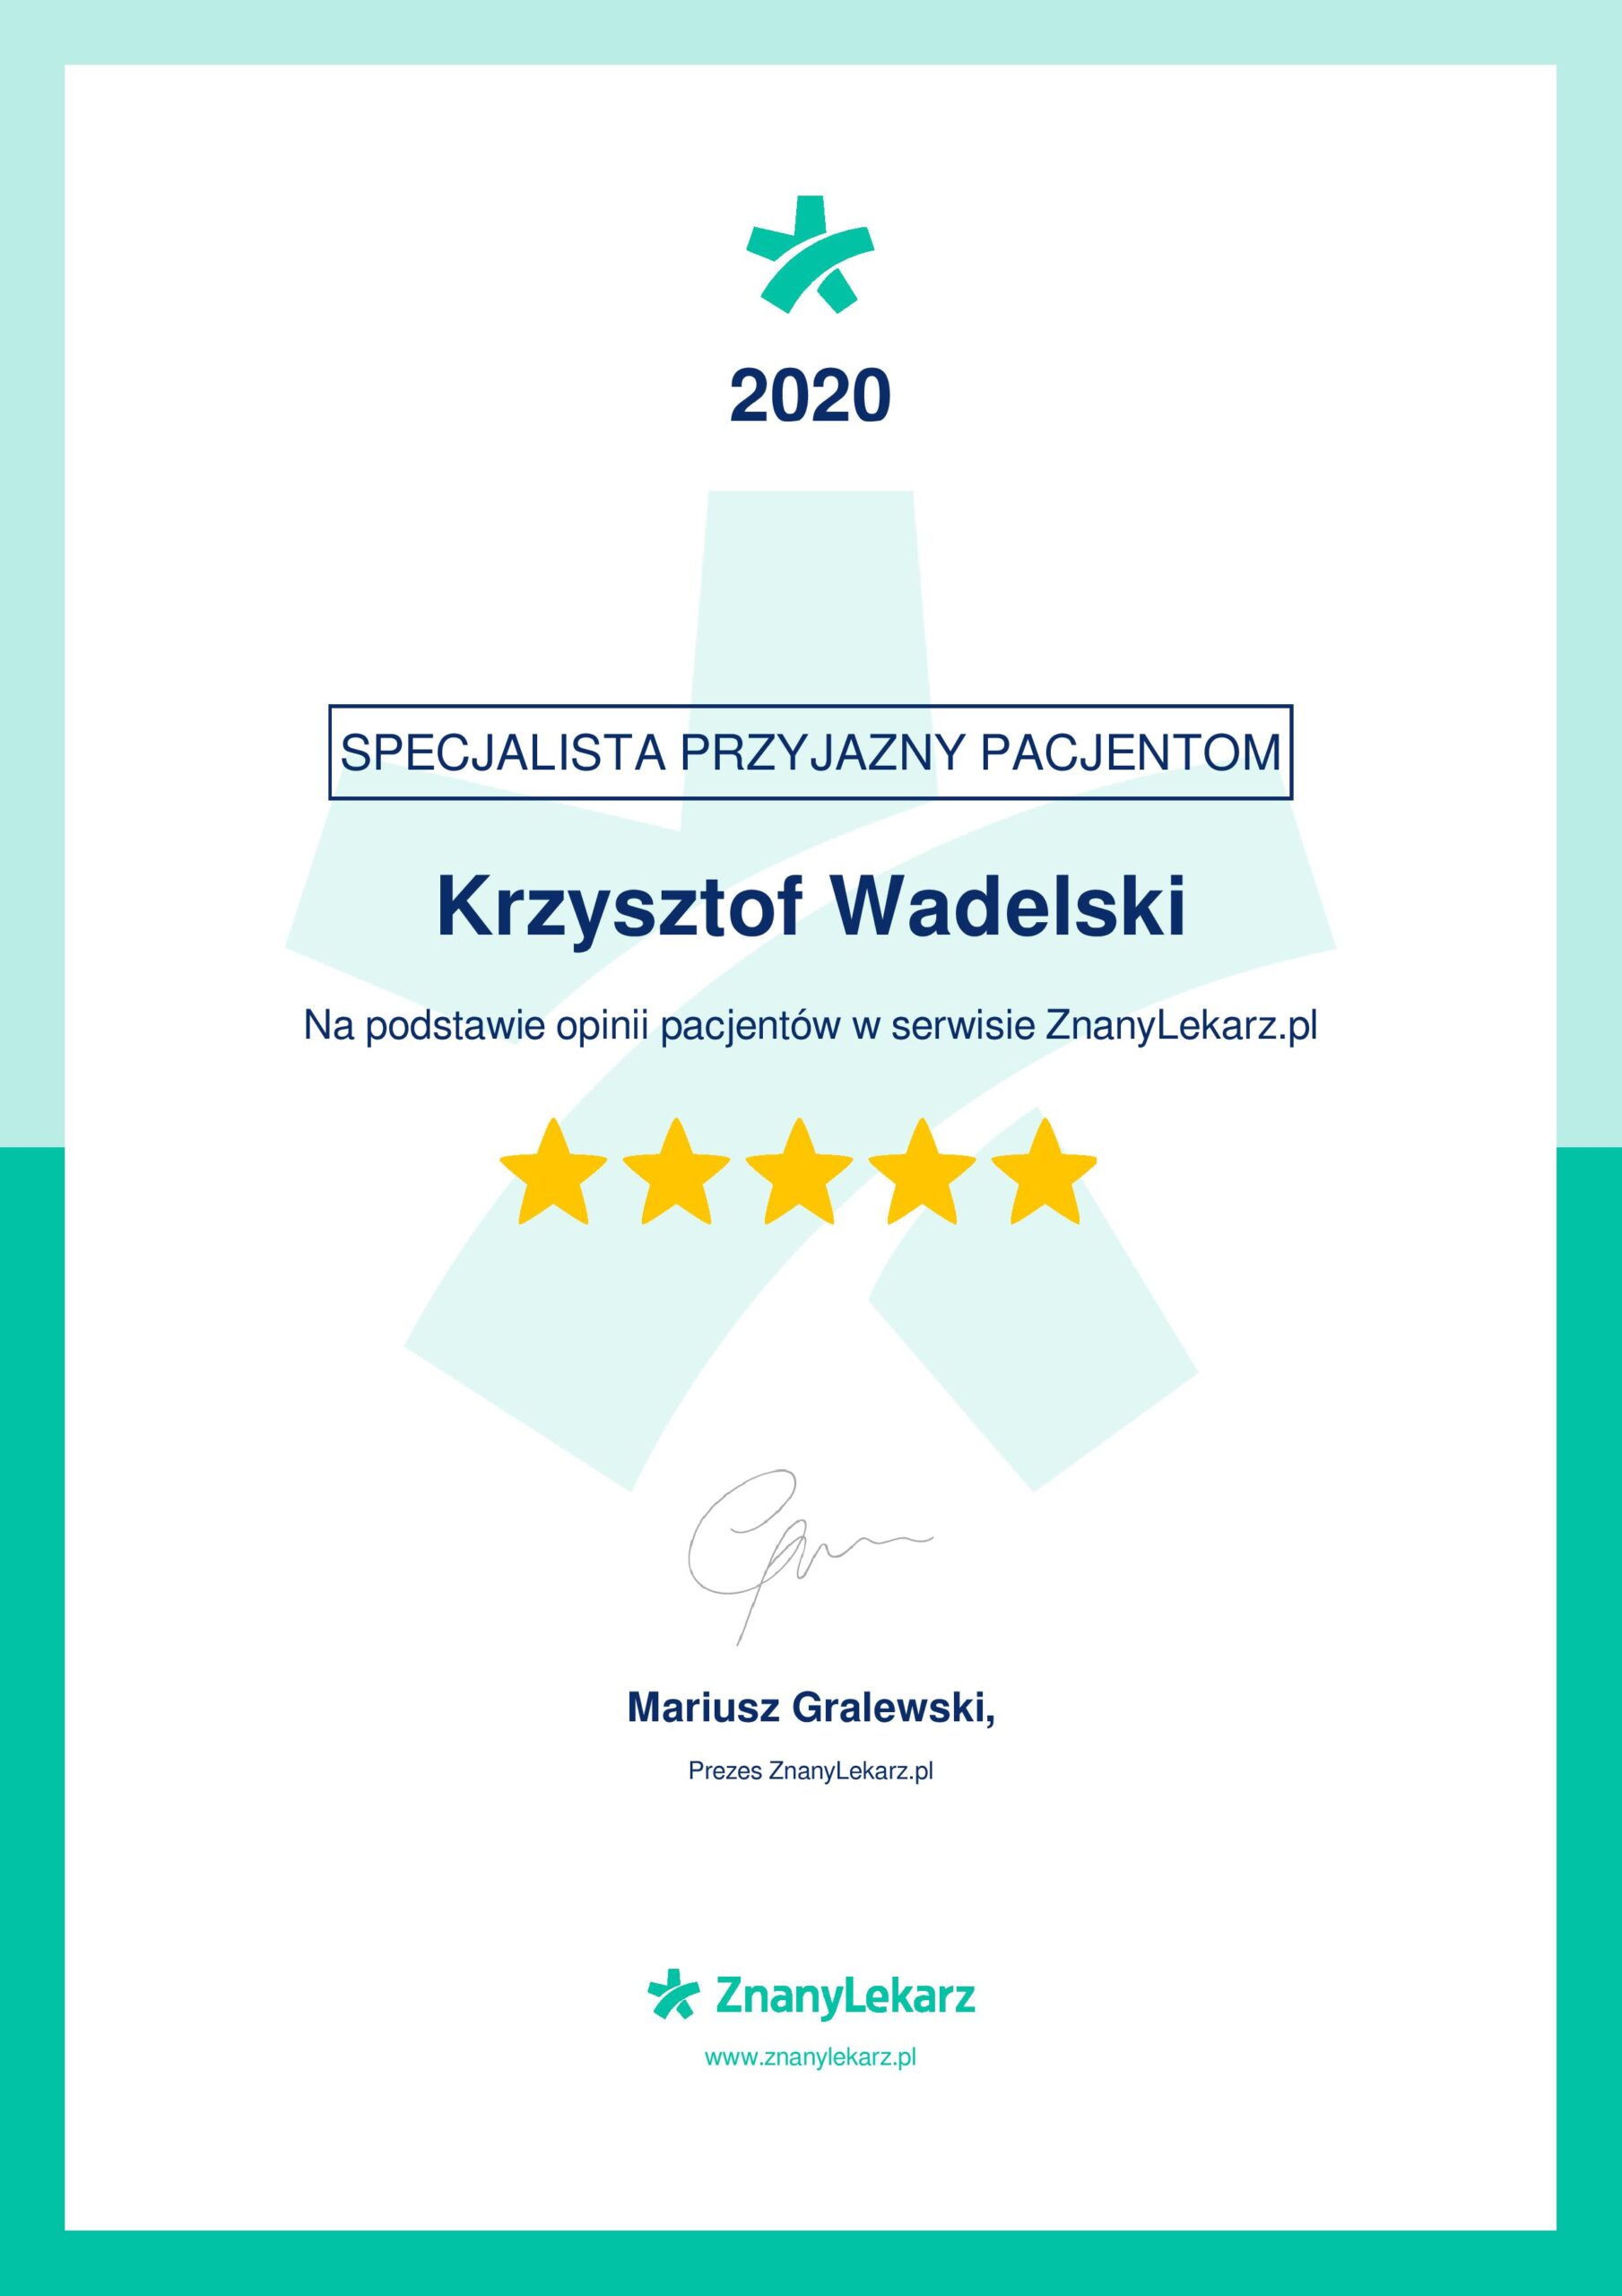 krzysztof-wadelski-znany-lekarz-certificate-2020